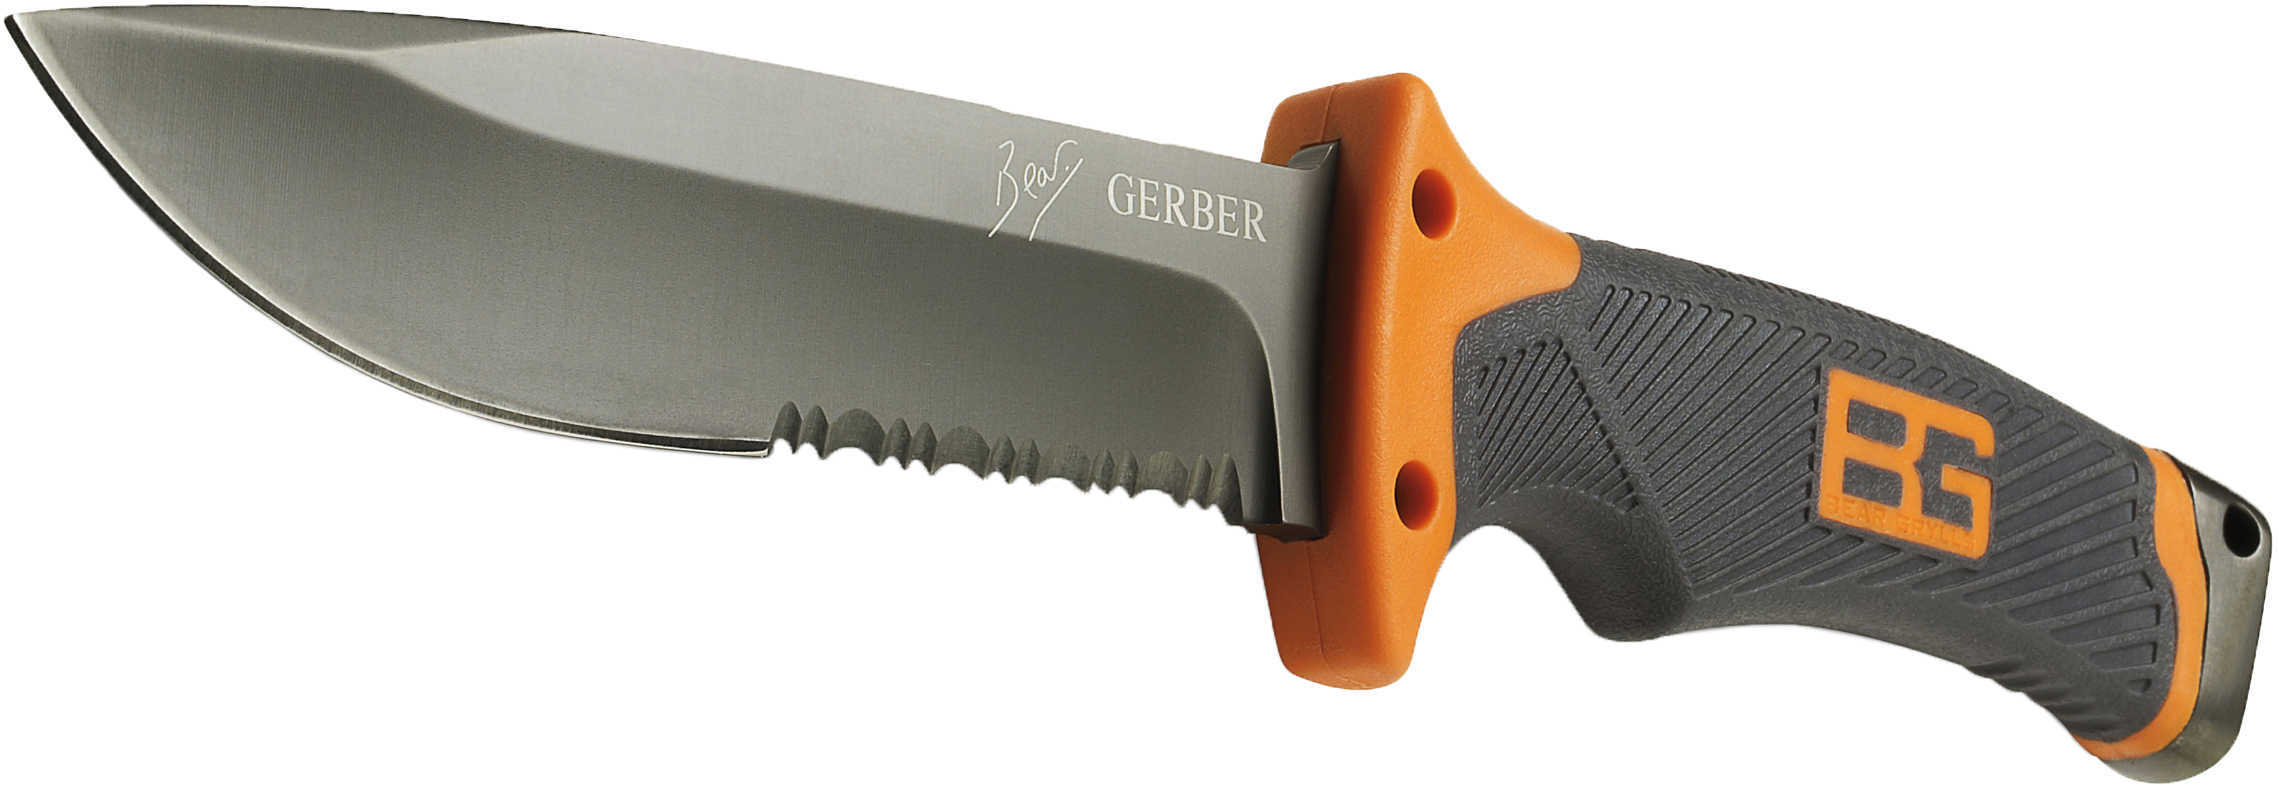 Gerber 000751 BG Fixed Steel Drop Point Blade Textured Rubber Grip